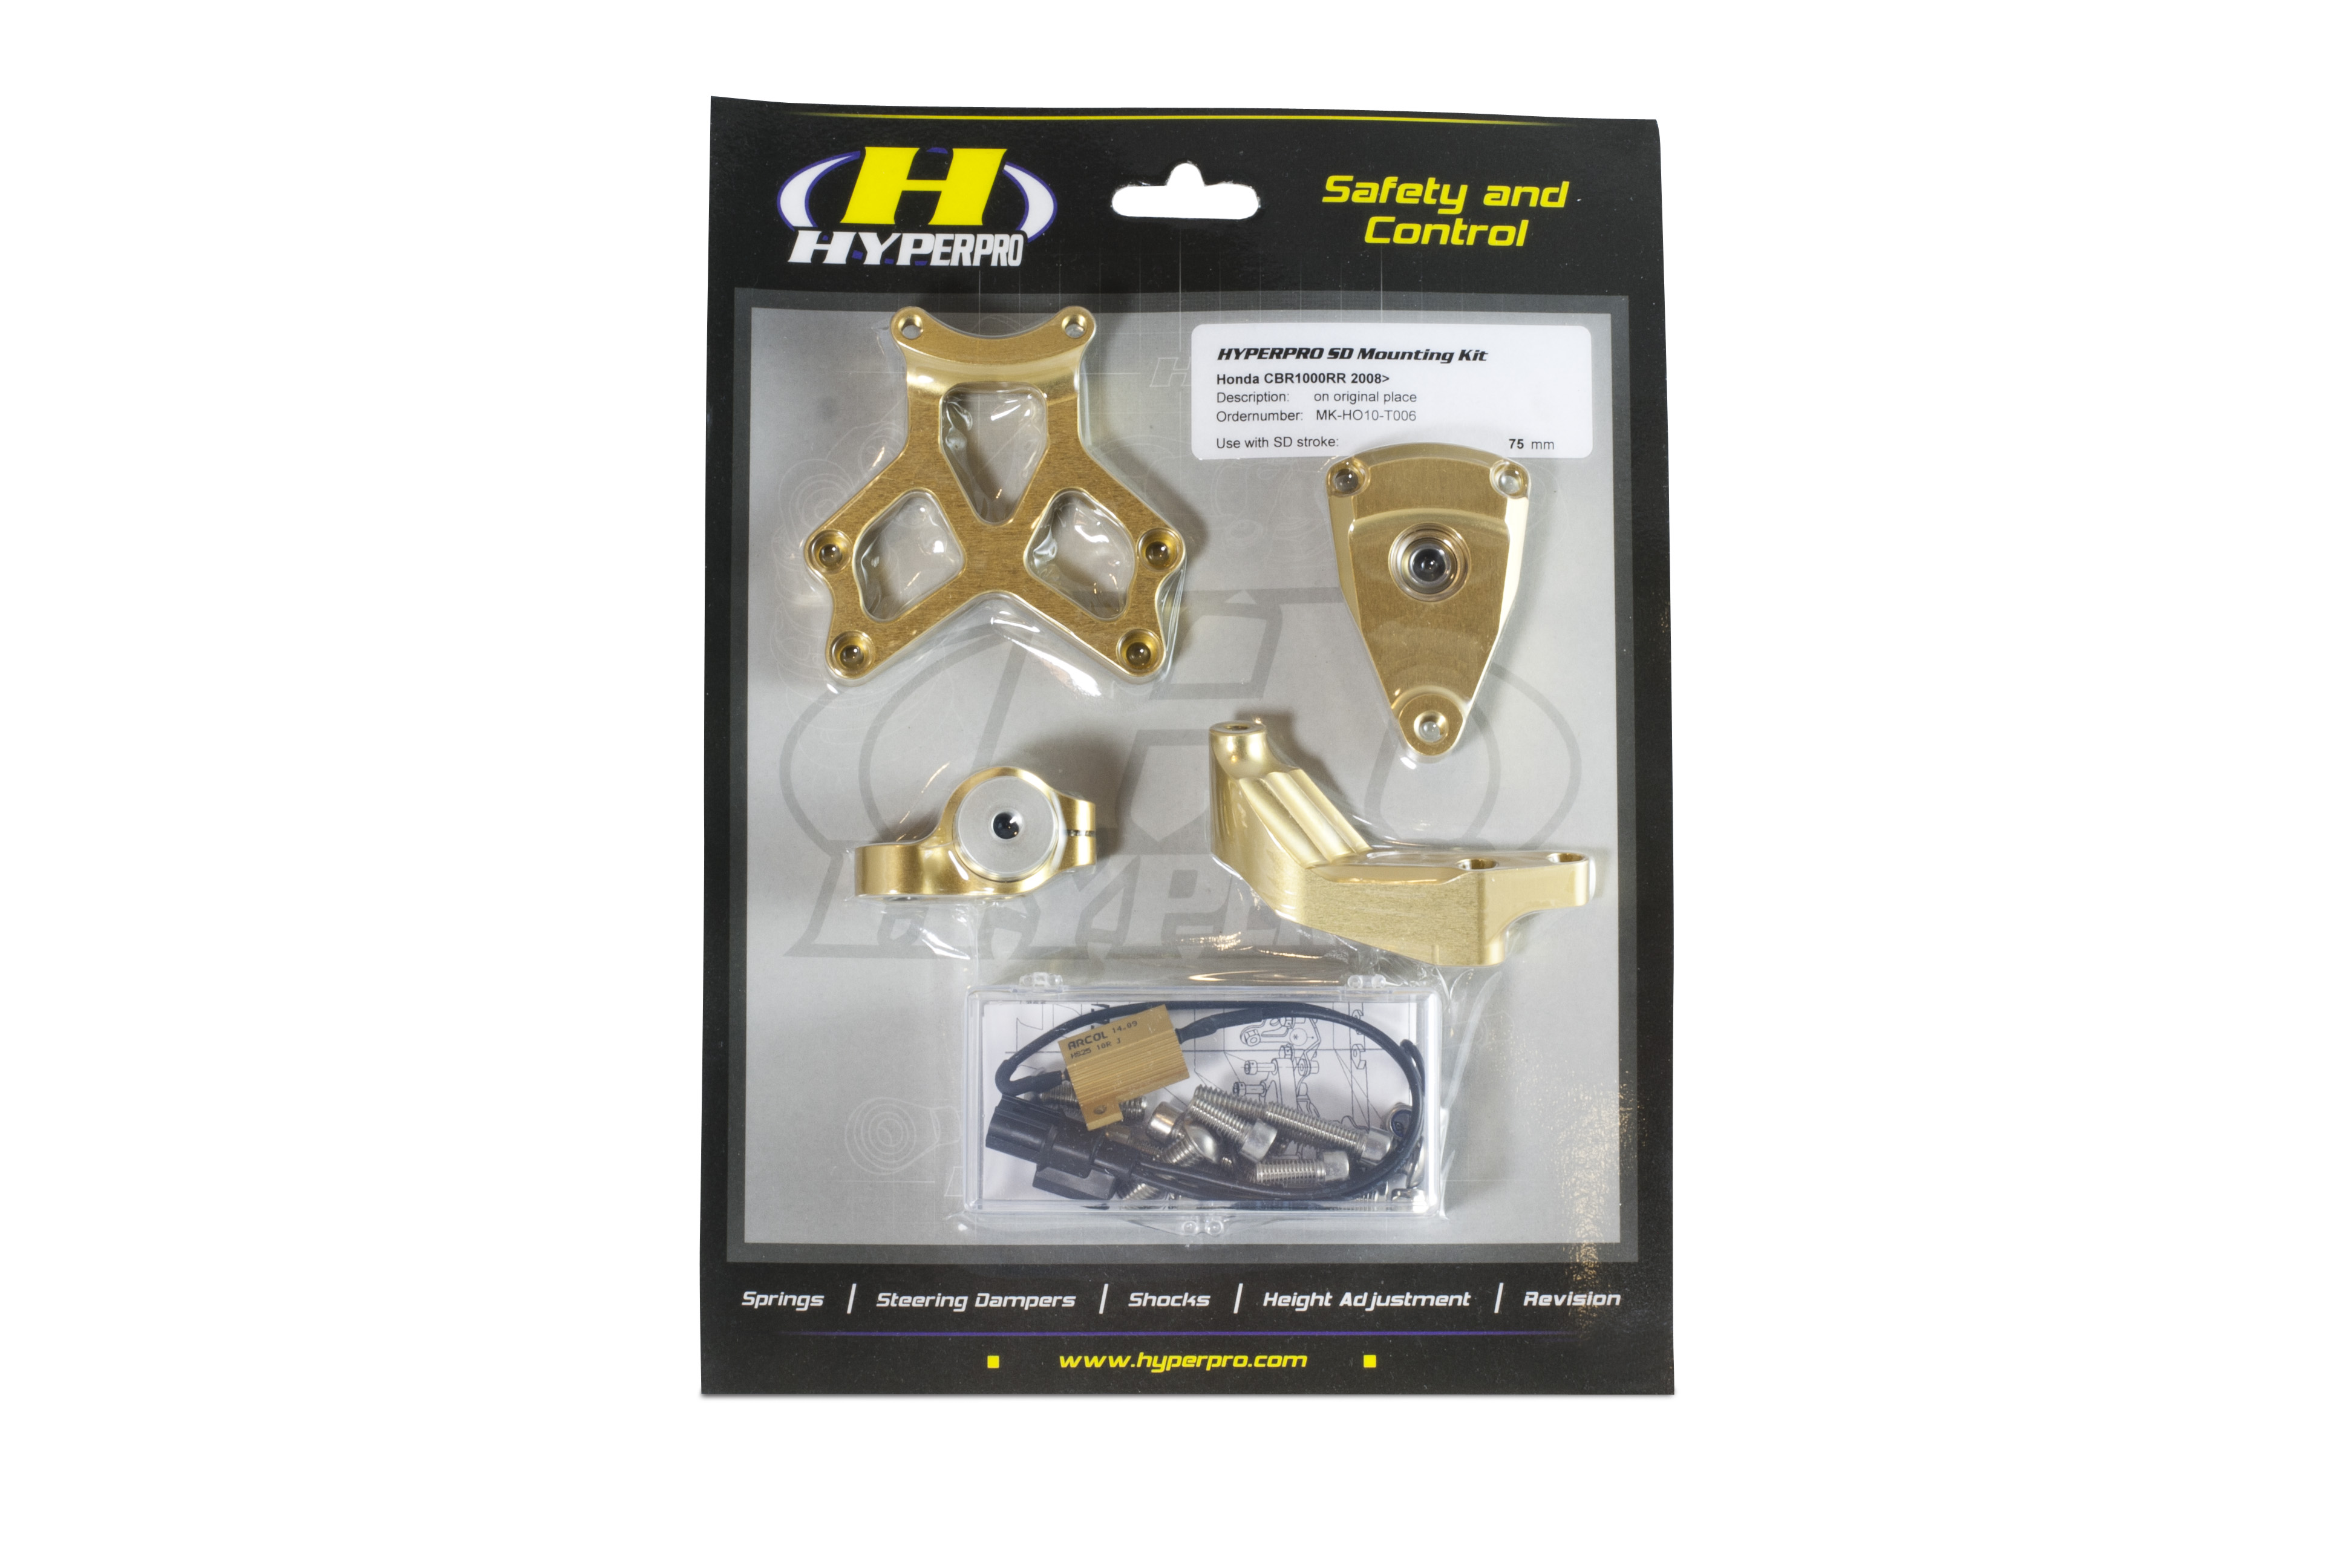 Das Hyperpro Montagekit besteht aus allem, was zur Montage eines Hyperpro Lenkungsdämpfers benötigt wird. Passgenauigkeit am Fahrzeug und Verarbeitung sind sind auf höchstem Niveau. Lieferbar in schwarz und Gold.